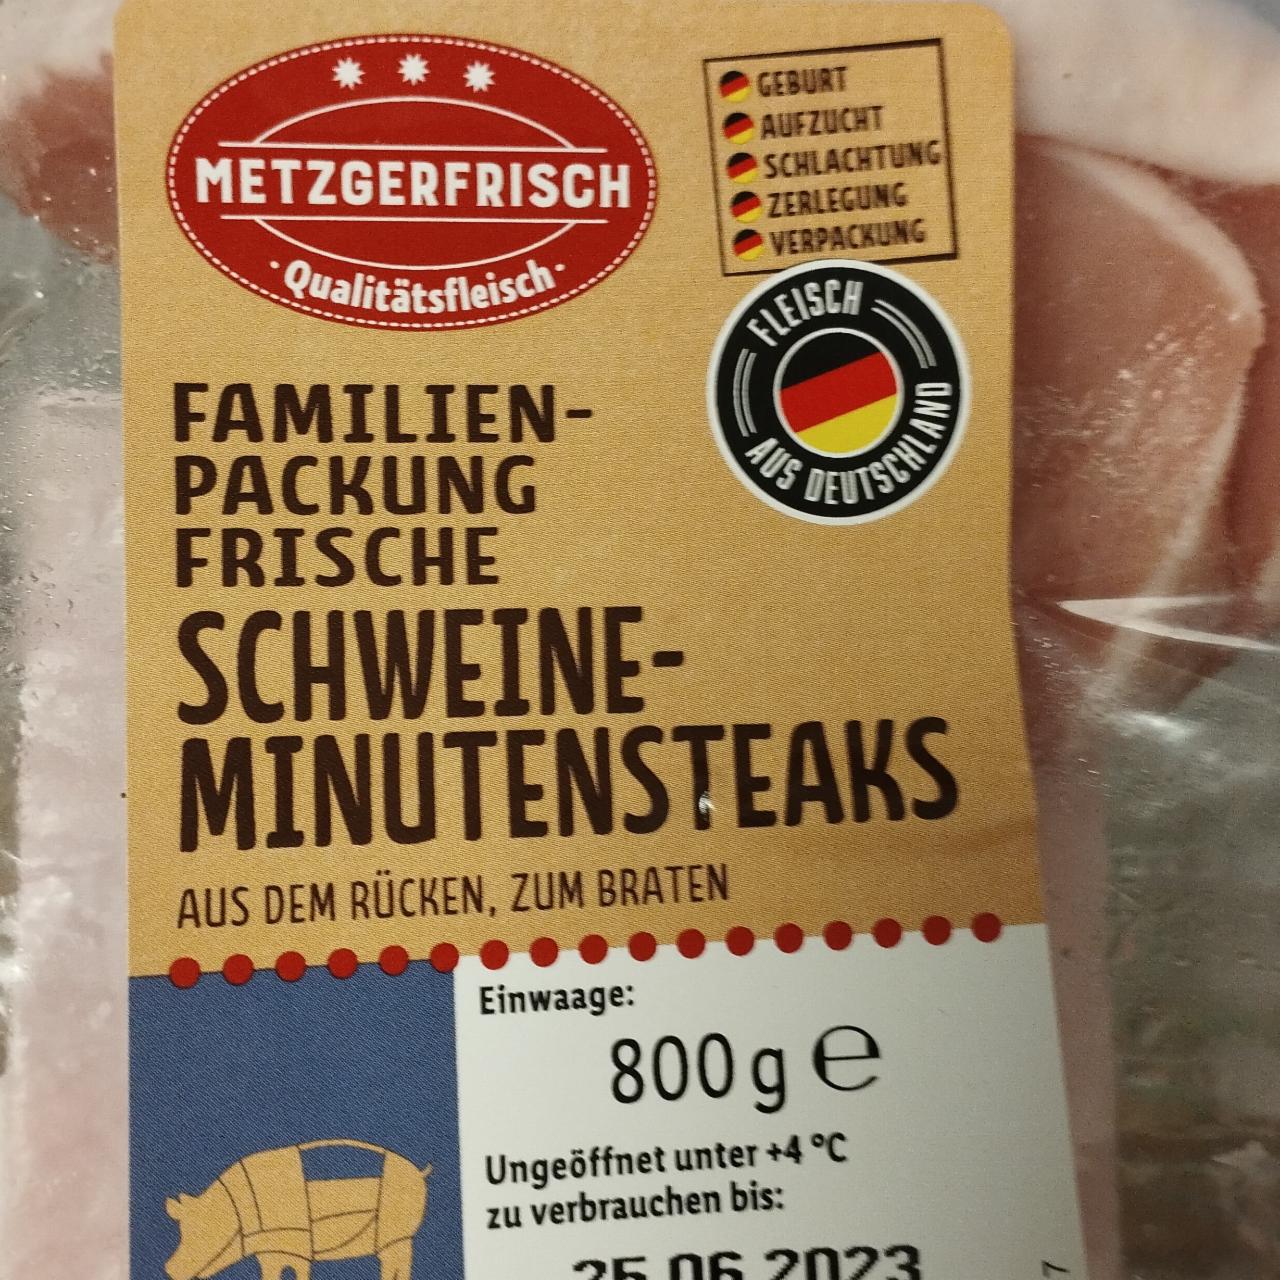 Familien-packung frische schweine Metzgerfrisch ⋙TablycjaKalorijnosti харчова калорійність, цінність - minutensteaks